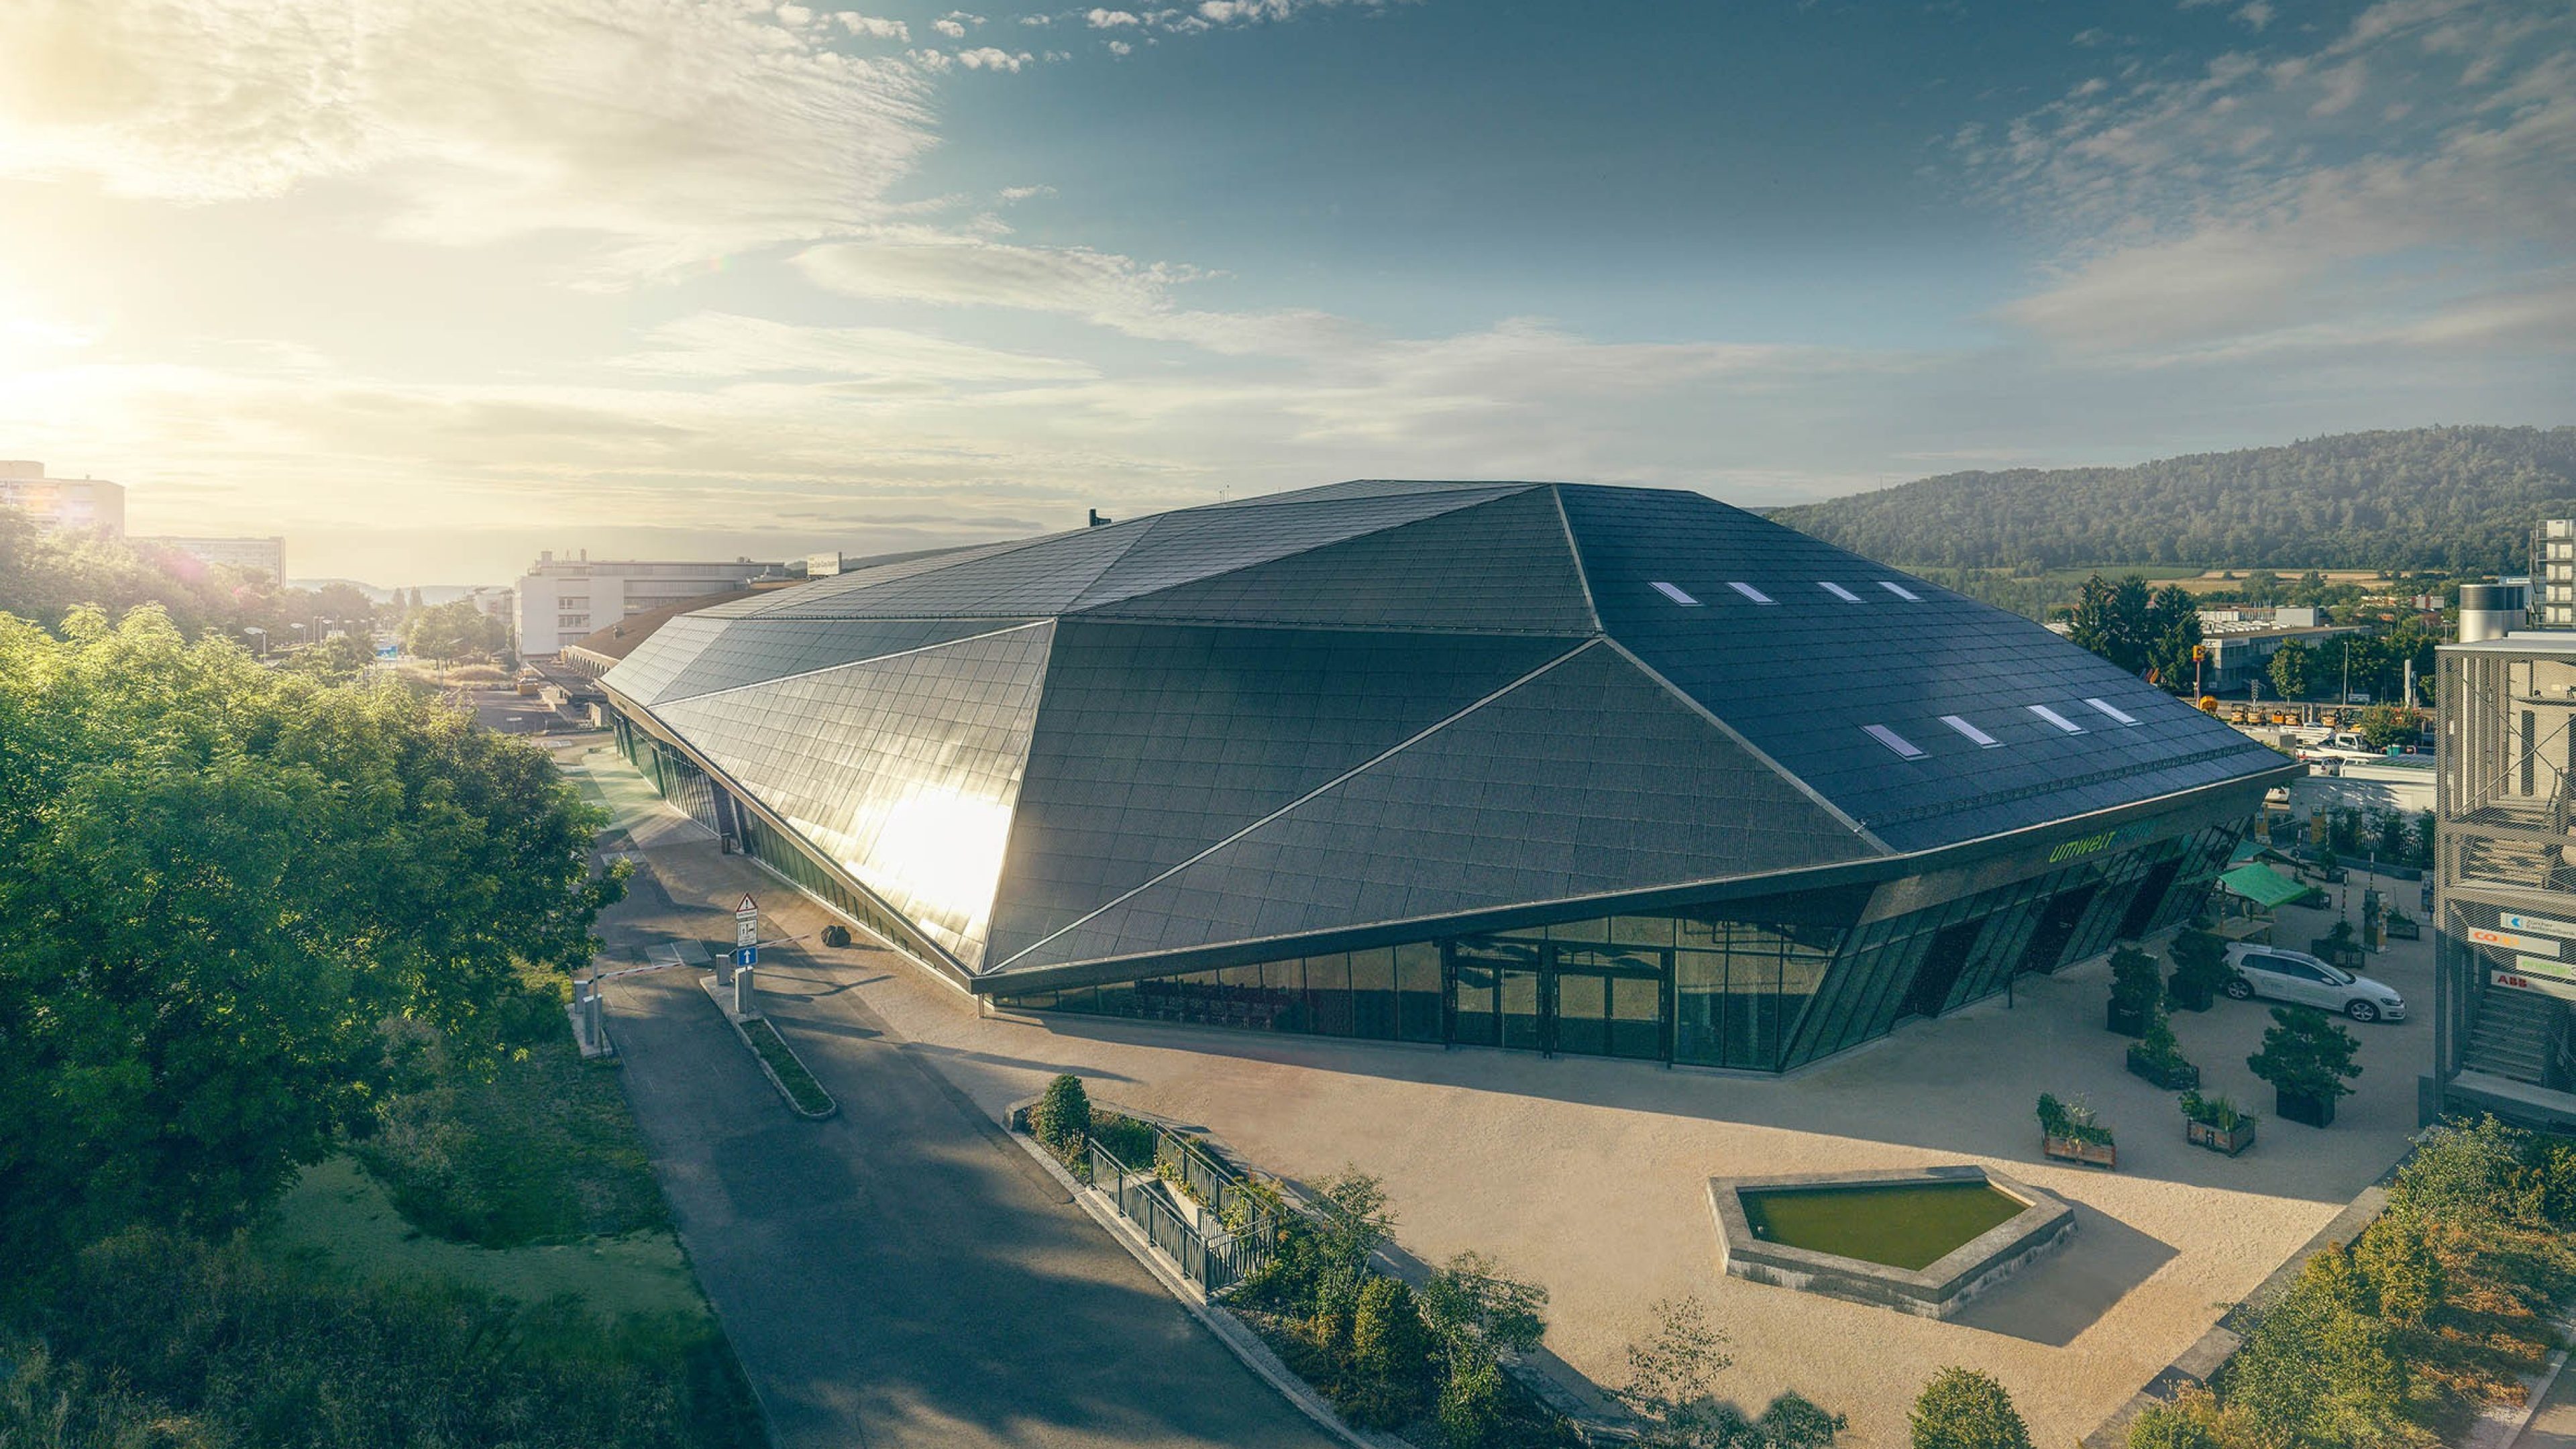 Vue d'en haut de l'Umwelt Arena avec son grand toit solaire.